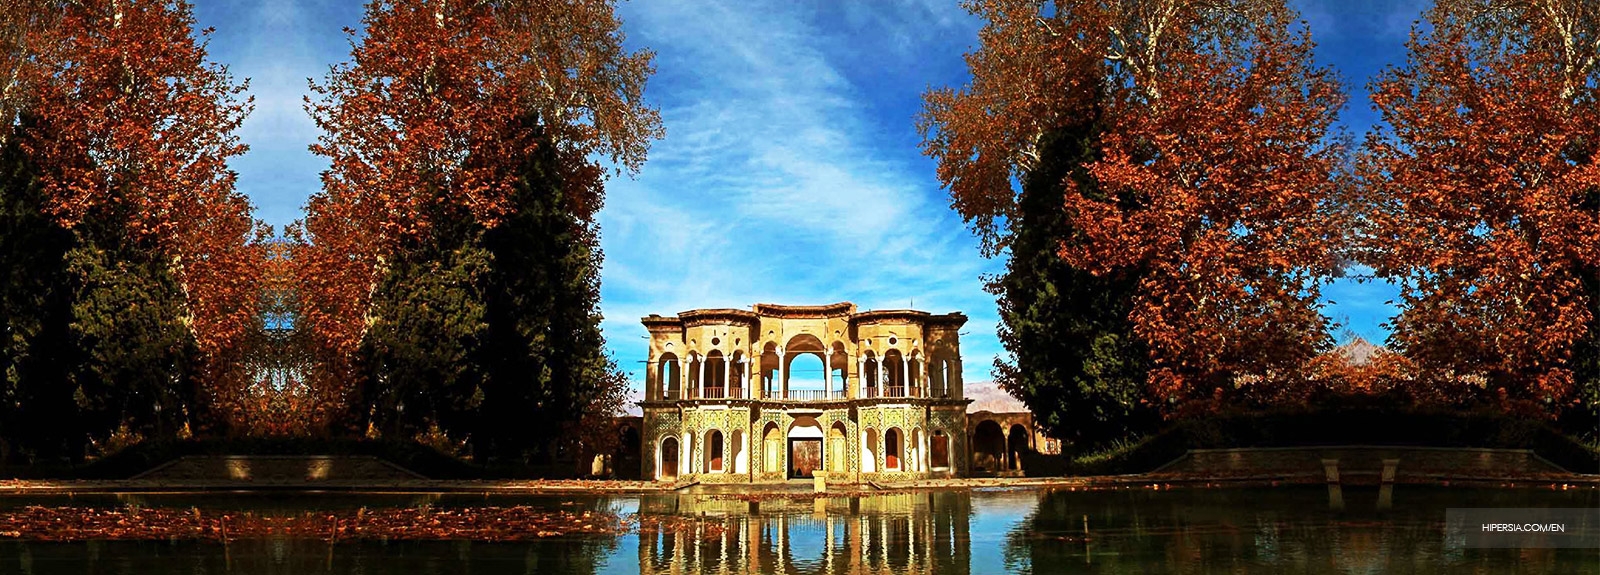 Shahzadeh Garden